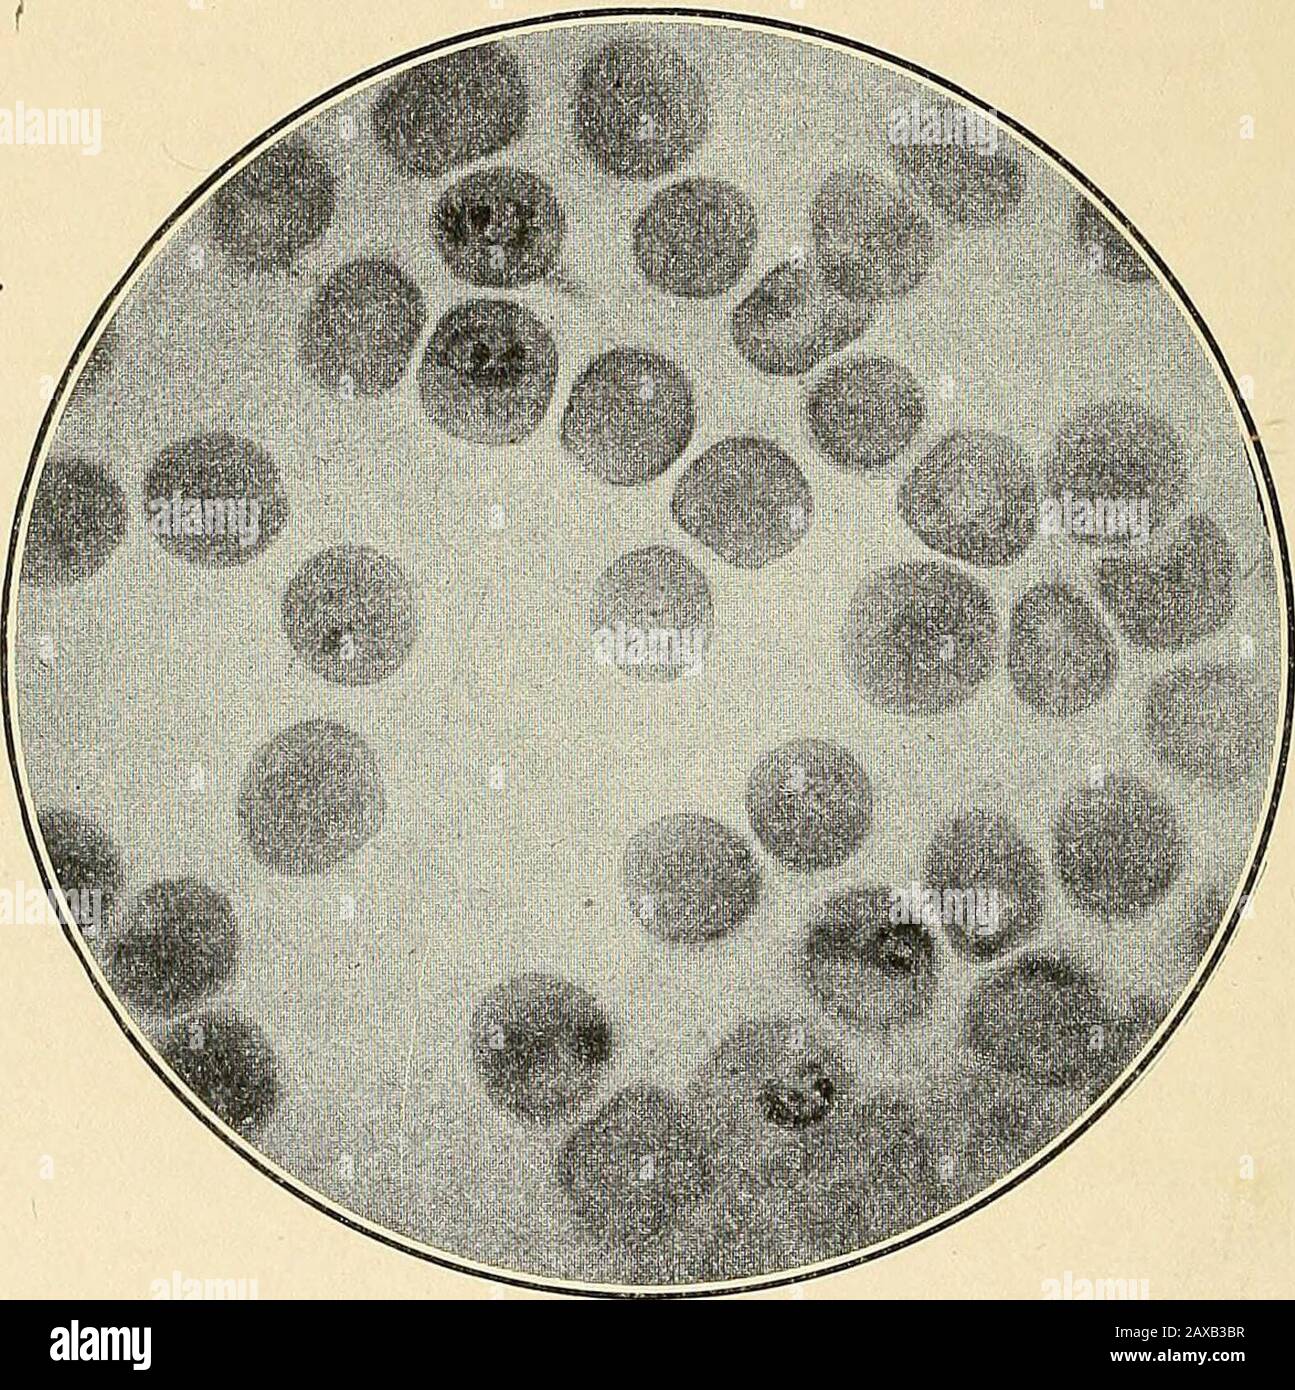 Les fièvres malariaux, la fièvre hémoglobinurique et les protozoaires sanguins de l'homme . odium, ou Plasmodium falciparum, apparaissent d'abord dans le corpuscle rouge infecté comme un anneau ou un disque d'hyaline rond ou ovale, Mais même dans les 38 ÉTIOLOGIE DES FIÈVRES MALARIAUX, les premières étapes du développement du schizont importantes différences sont à se faire entre cette espèce et les espèces quotidiennes. Les jeunes plasmodiaânes tertiens sont beaucoup plus grands que ceux des espèces quotidiennes, occupant le quart de la mousse à un tiers de la cellule rouge infectée, qui, alors que les cellules plus petites de la couleur normale l'entourent, et le verdâtre dedans Banque D'Images